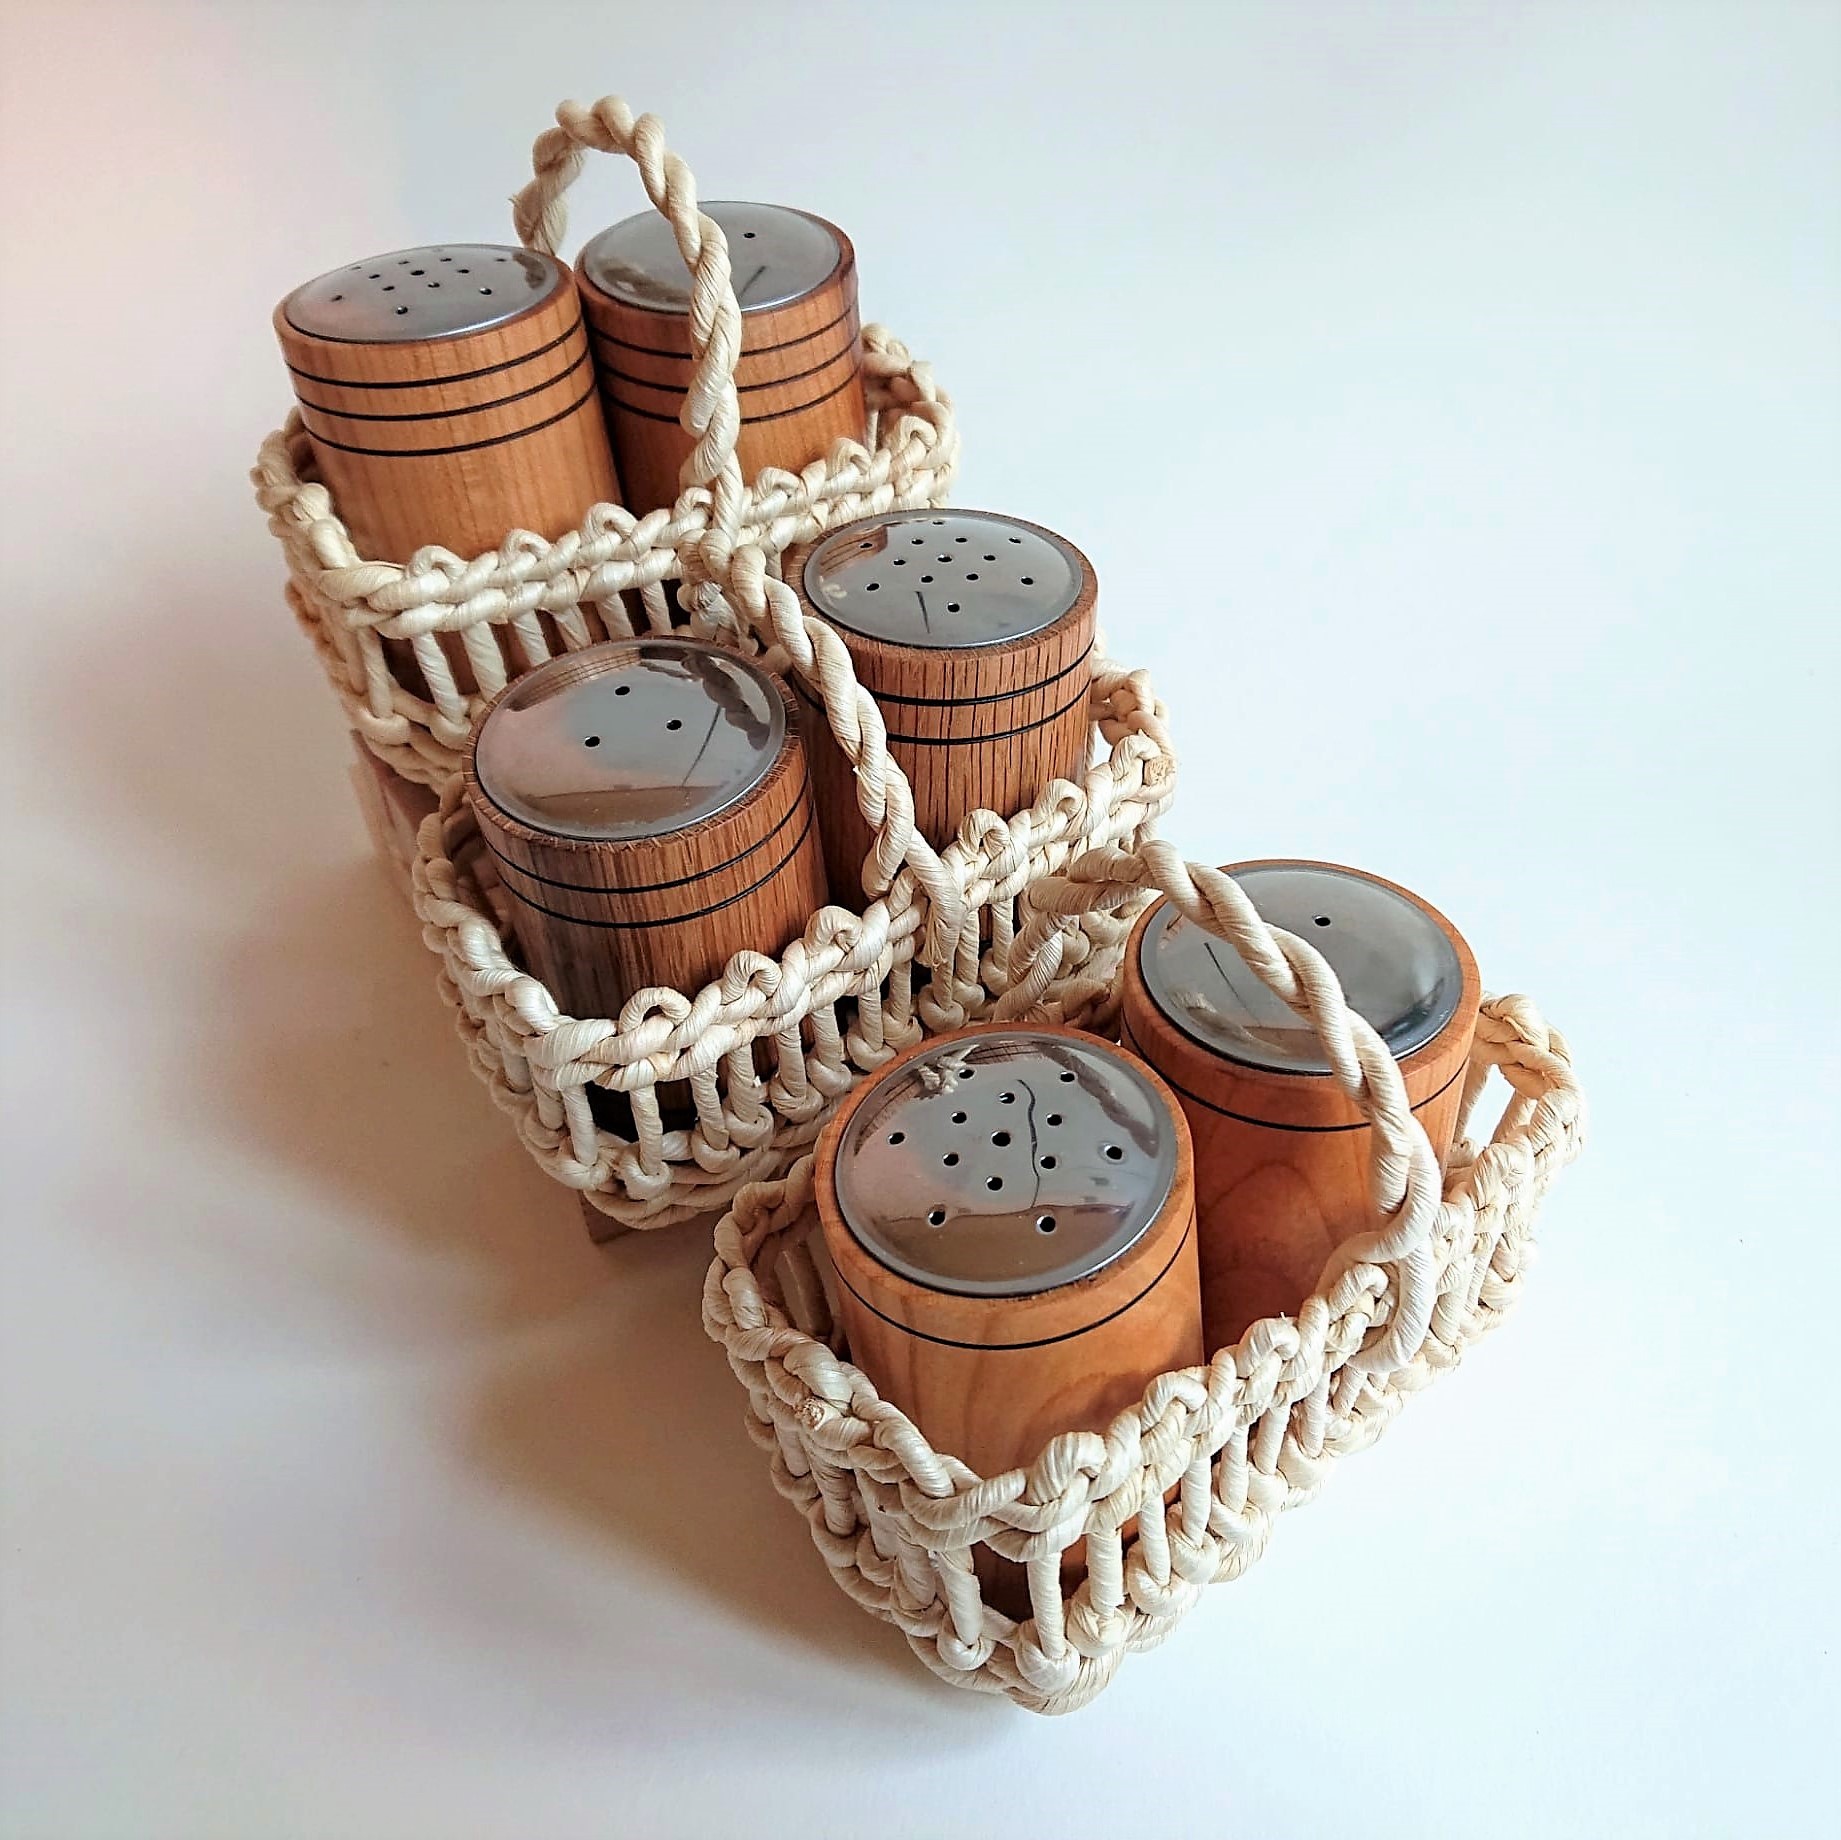 Salz und Pfefferstreuer aus vers. Holzsorten in Maiskörbchen gesteckt und treppenförmig dargestellt